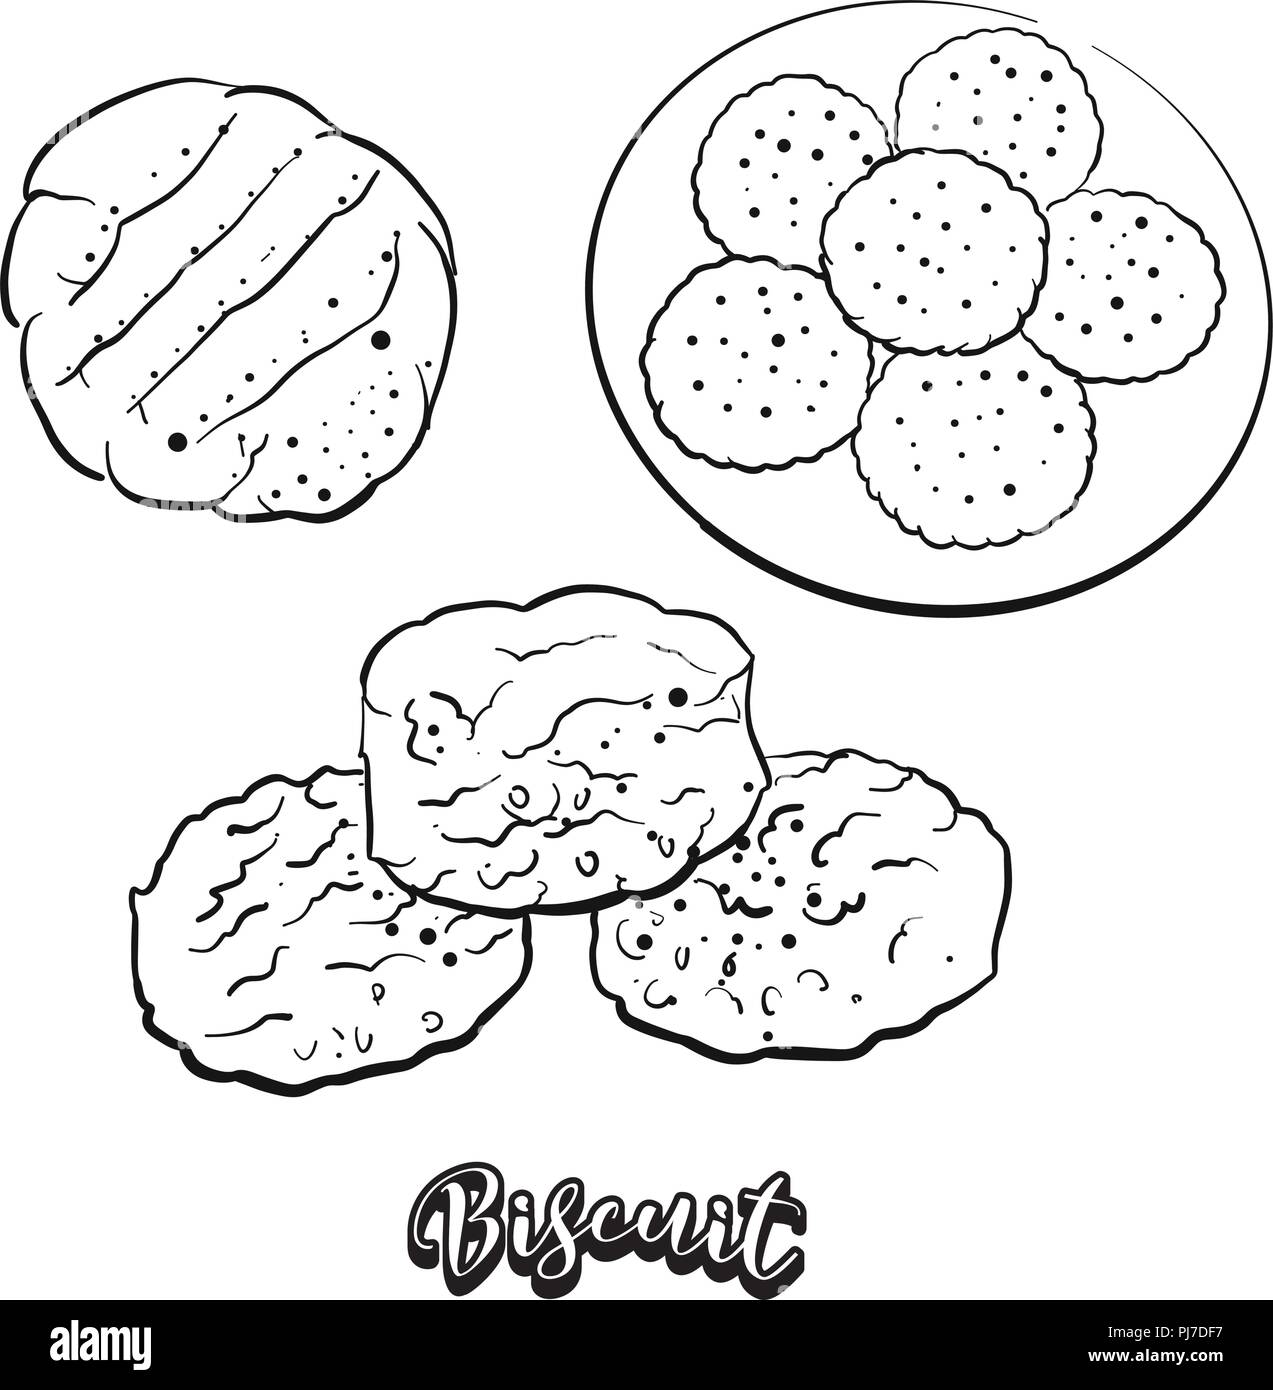 Croquis dessinés à la main, Biscuit de pain. Dessin vectoriel de pain sans levain levure ou alimentaire, généralement connu en Amérique du Nord et en Europe. Illustration du pain se Illustration de Vecteur